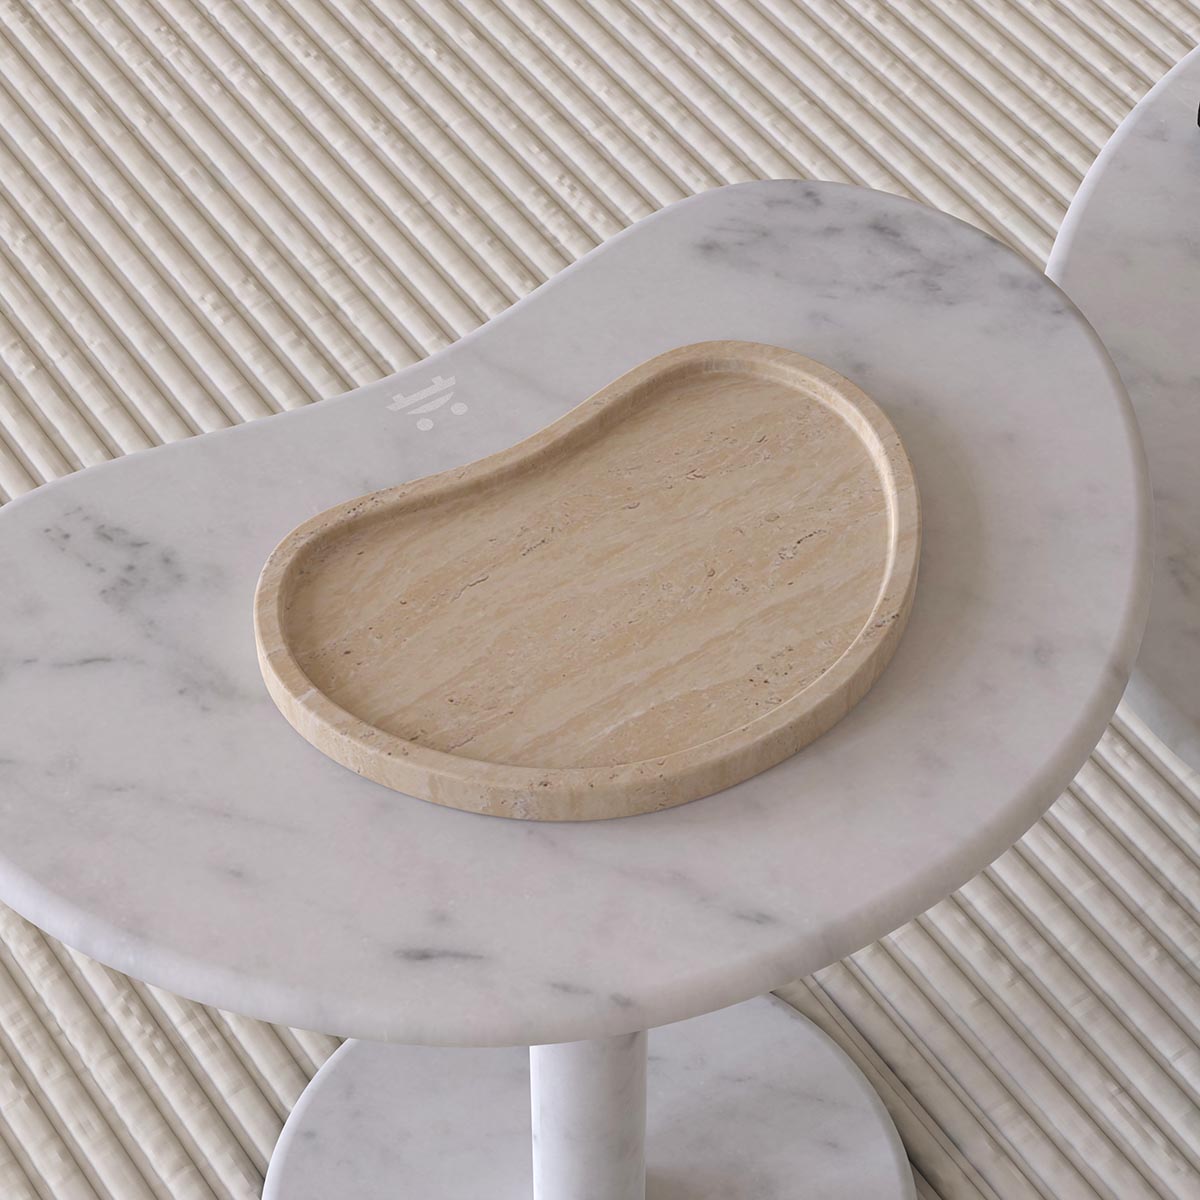 OIXDESIGN PeaPod Decorative Tray, Italian Classico Travertine, Back View